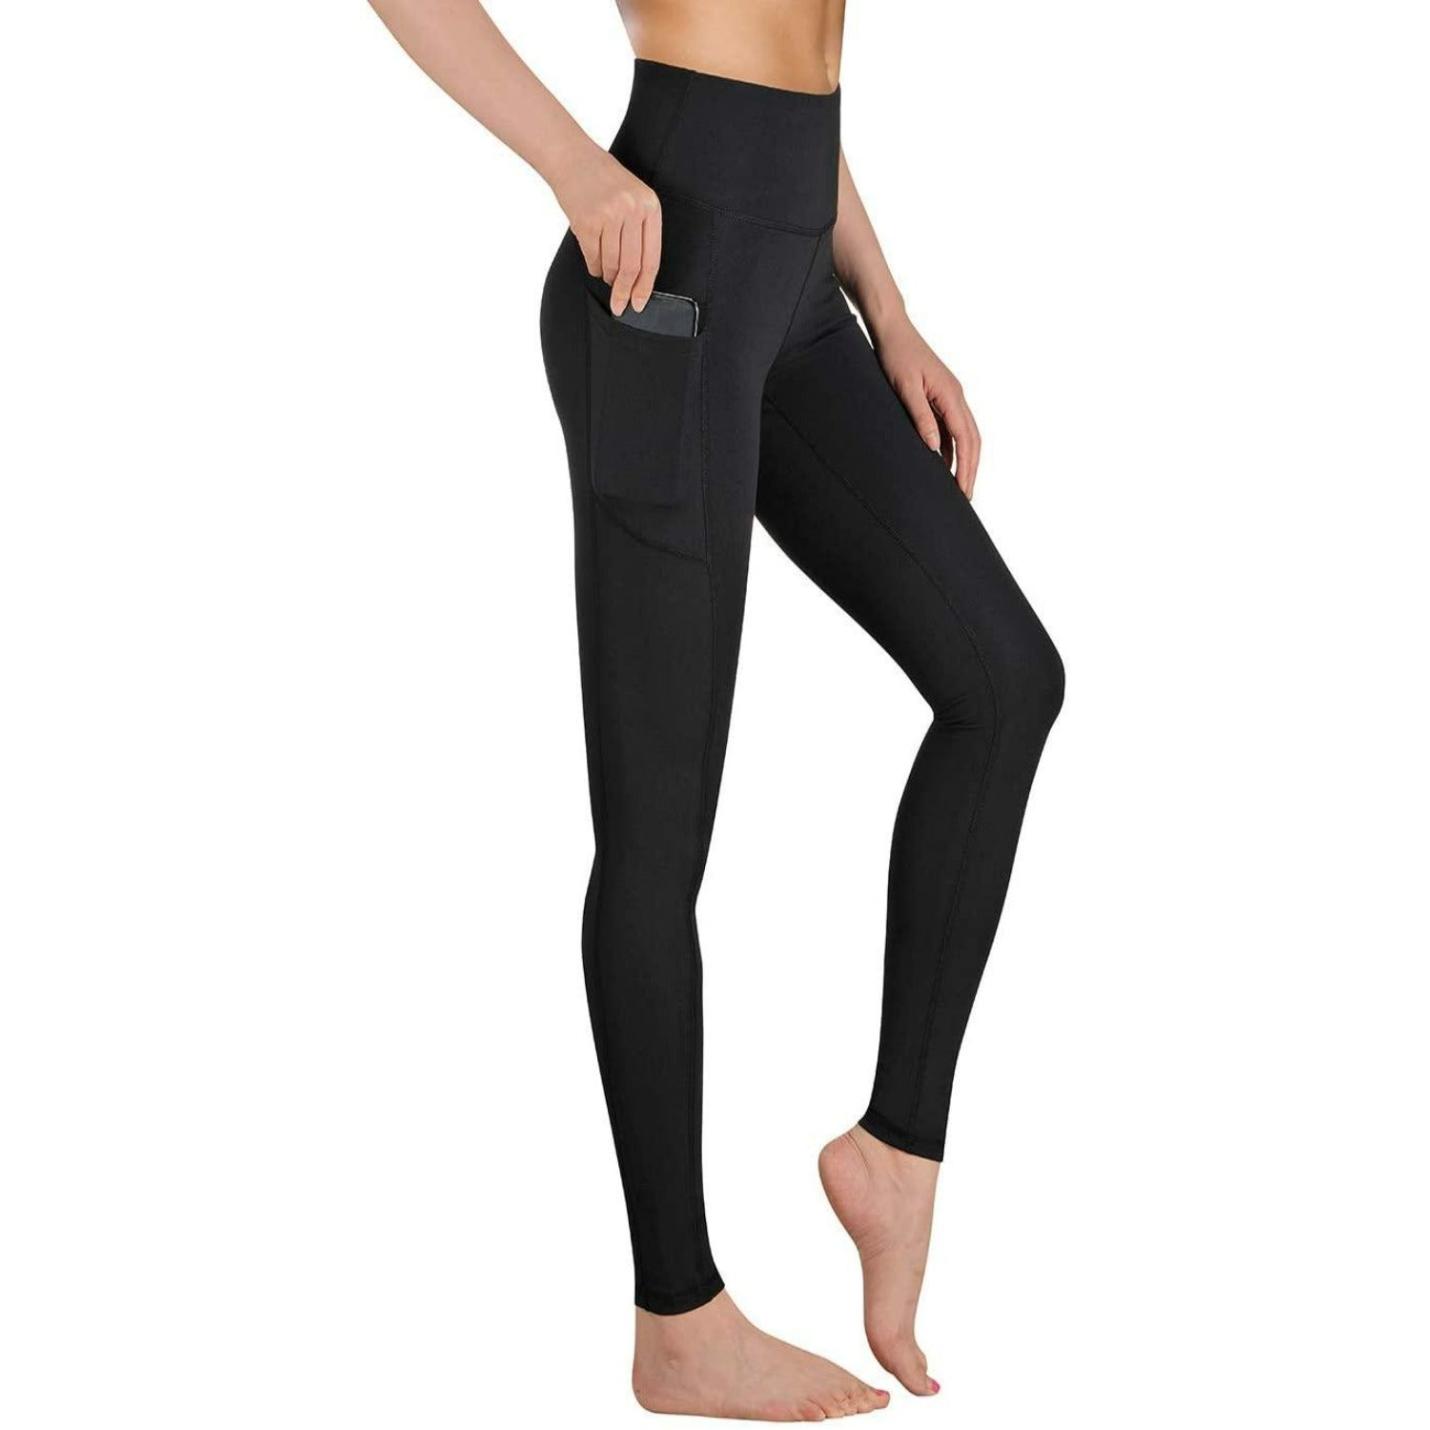 Lange yoga broek met hoge taille voor maximale ondersteuning en comfort